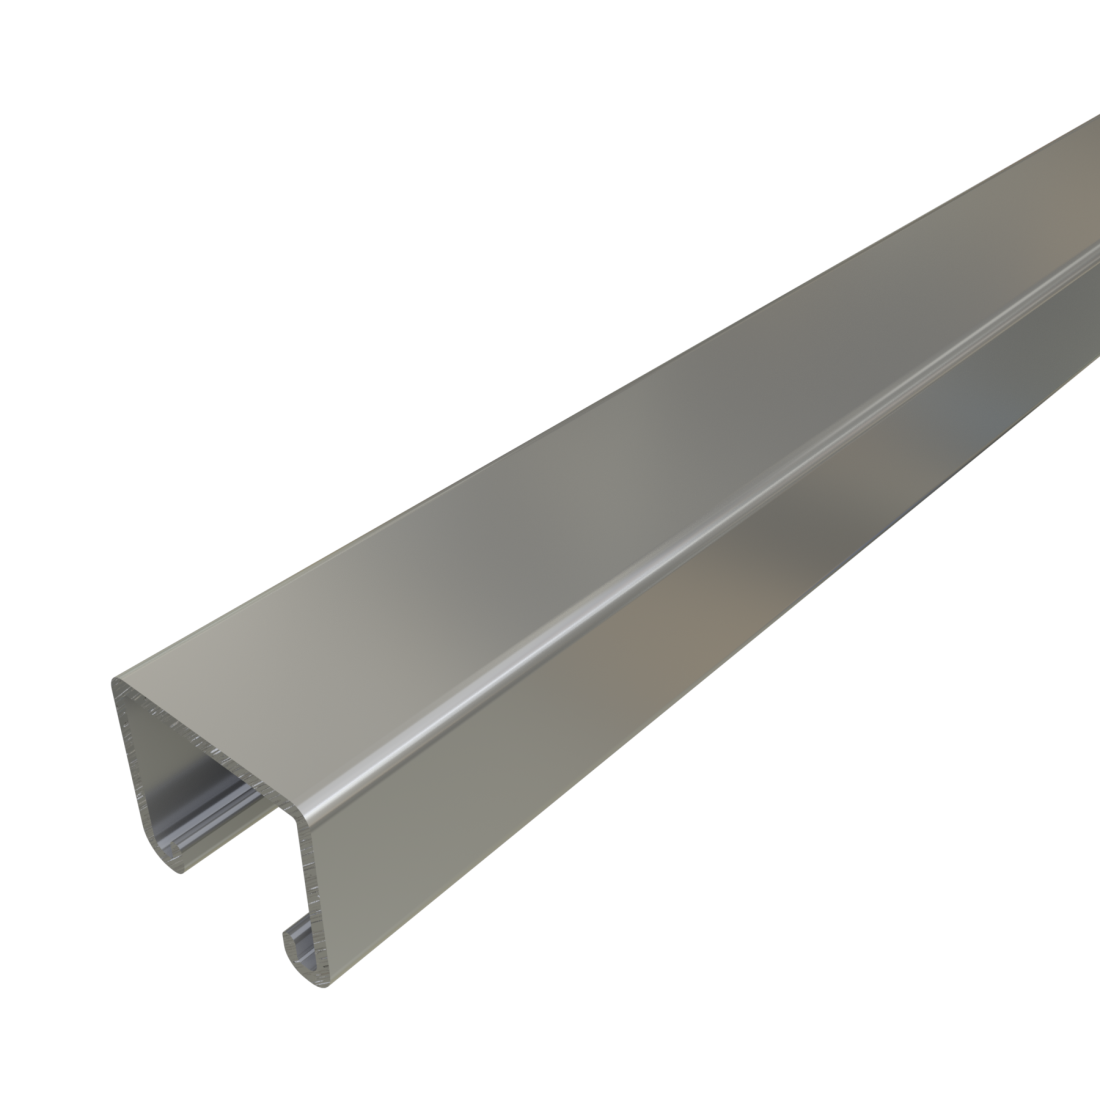 Unistrut P3000 - 1-5/8" x 1-3/8", 12 Gauge Metal Framing Strut, Solid